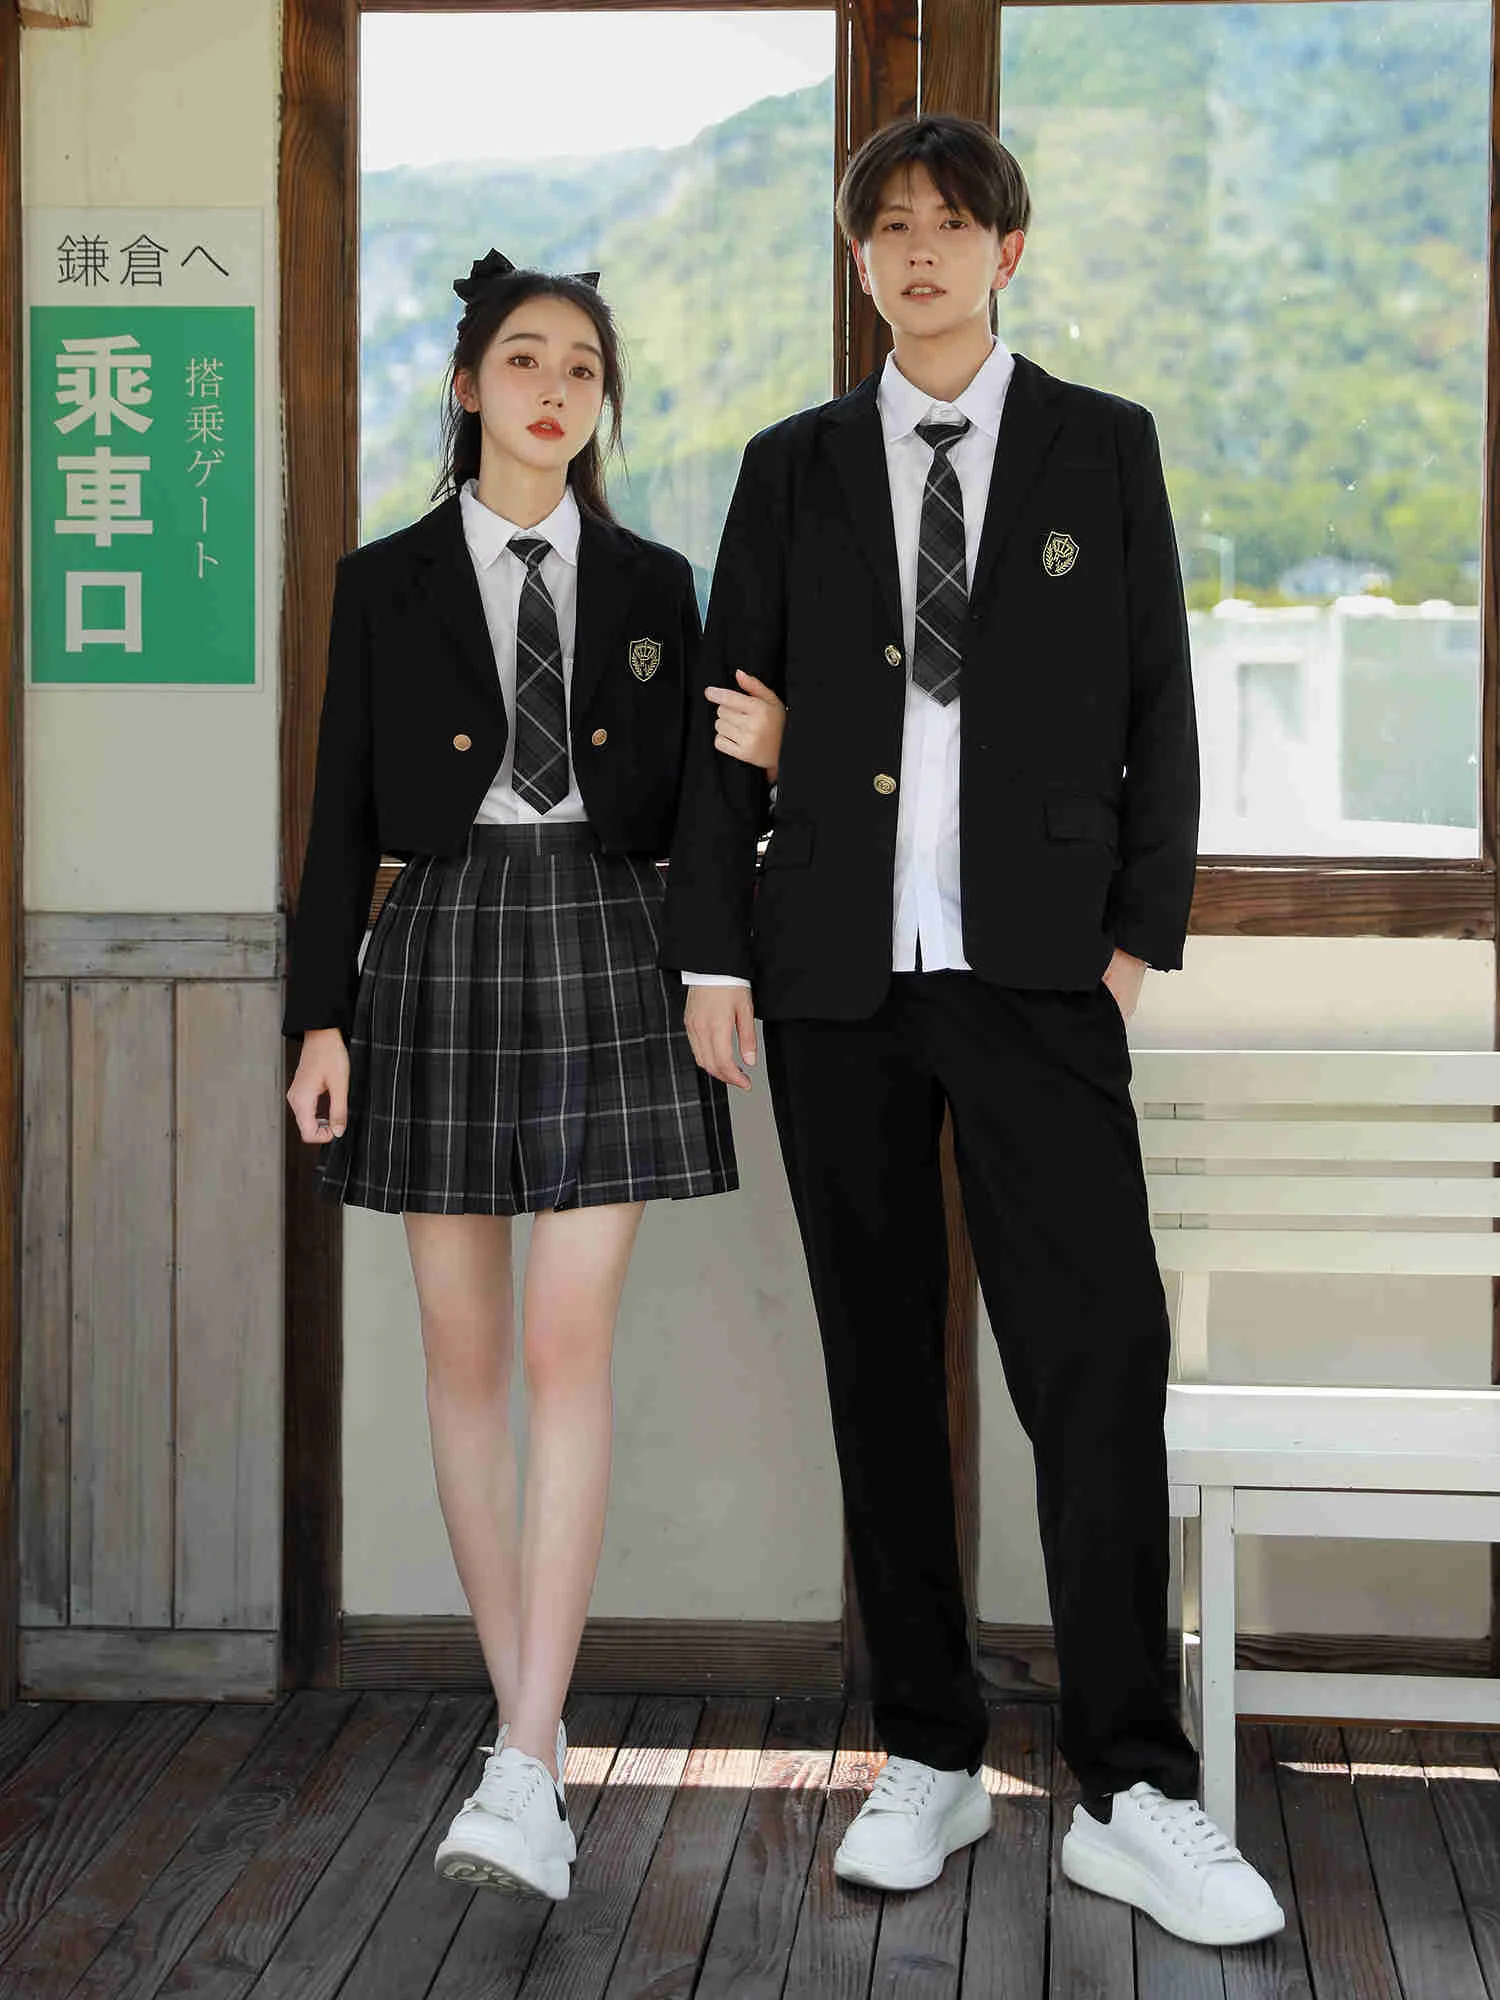 

Классная униформа, костюм в стиле колледжа, корейский, японский, школьный хор для учащихся старших классов